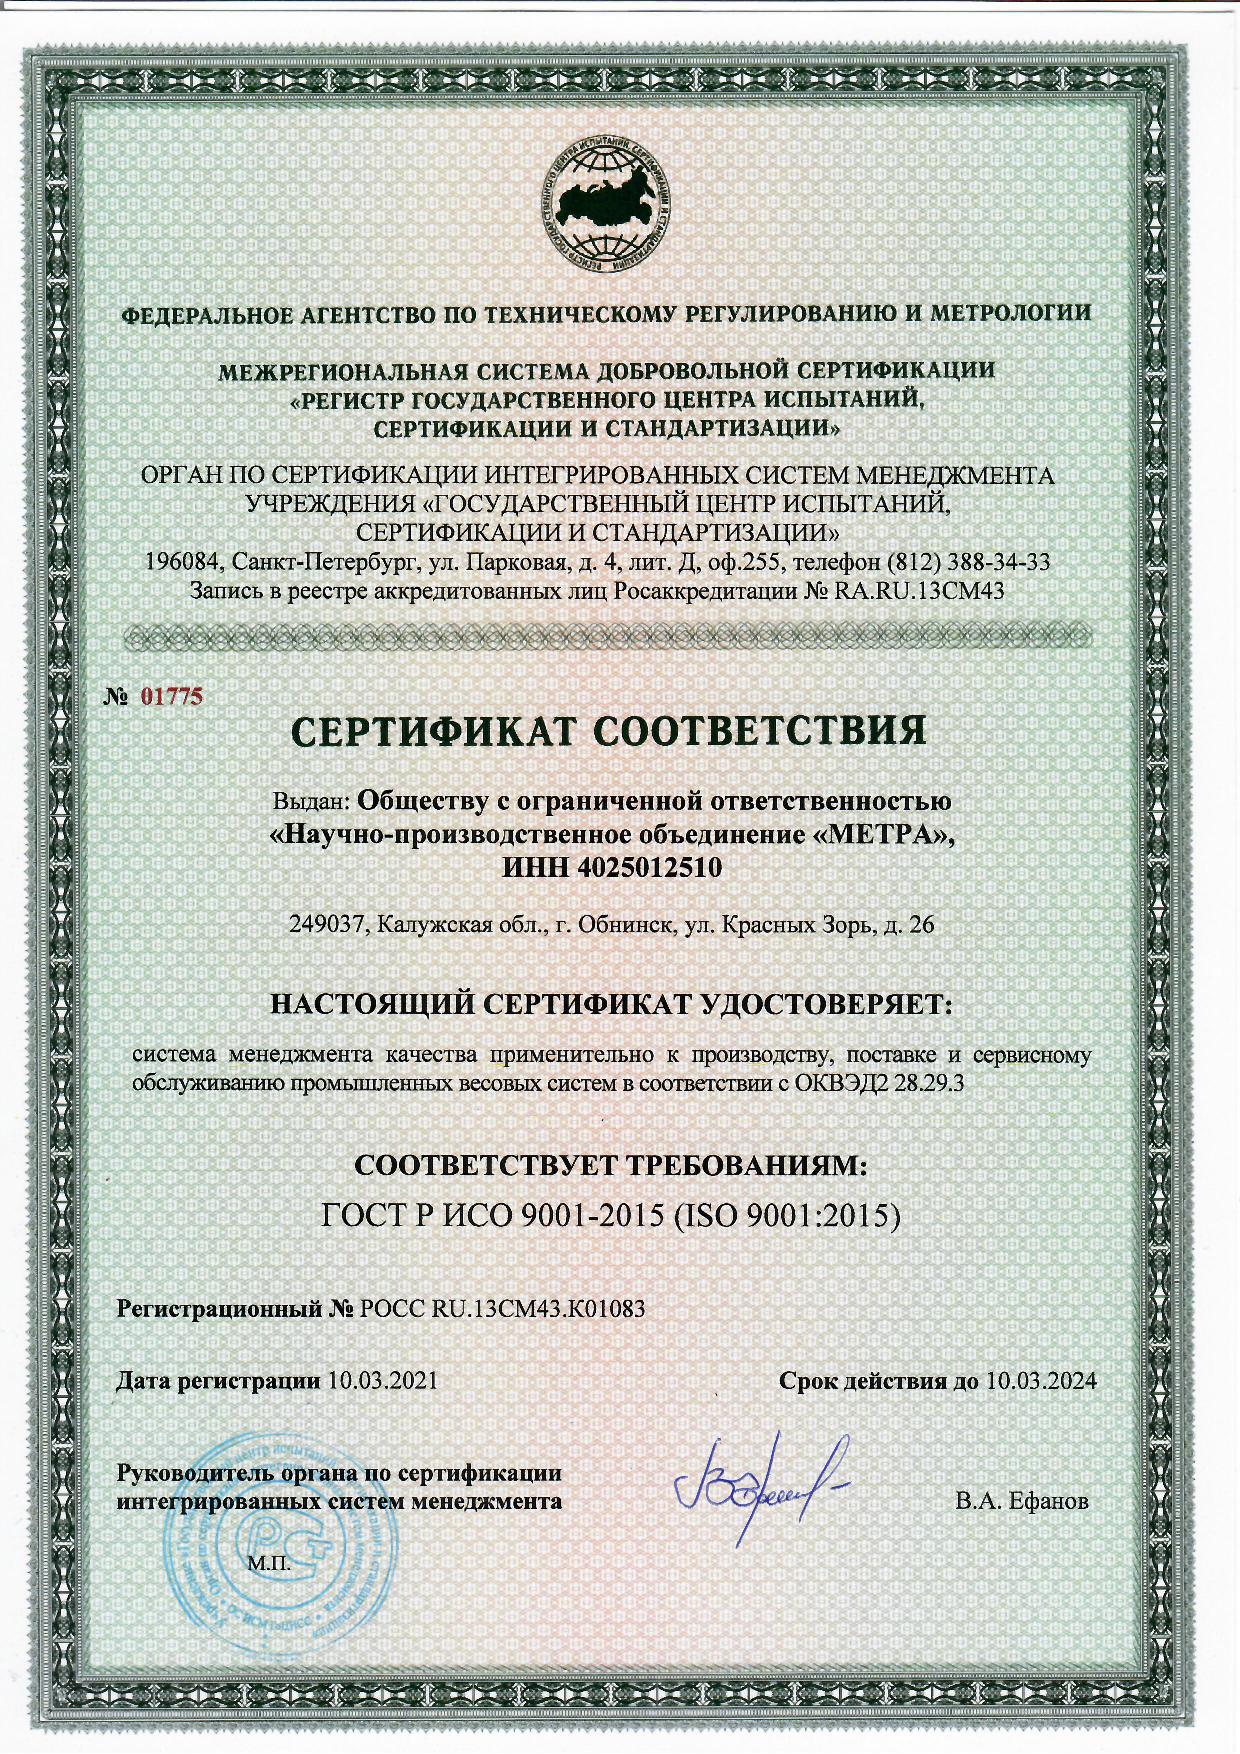 Гост смк 2015. ГОСТ Р ИСО 9001 ISO 9001 что это. Сертификат ГОСТ Р ИСО 9001-2015. Сертификат СМК ISO 9001. Сертификат системы менеджмента качества СМК стандарта ISO 9001.